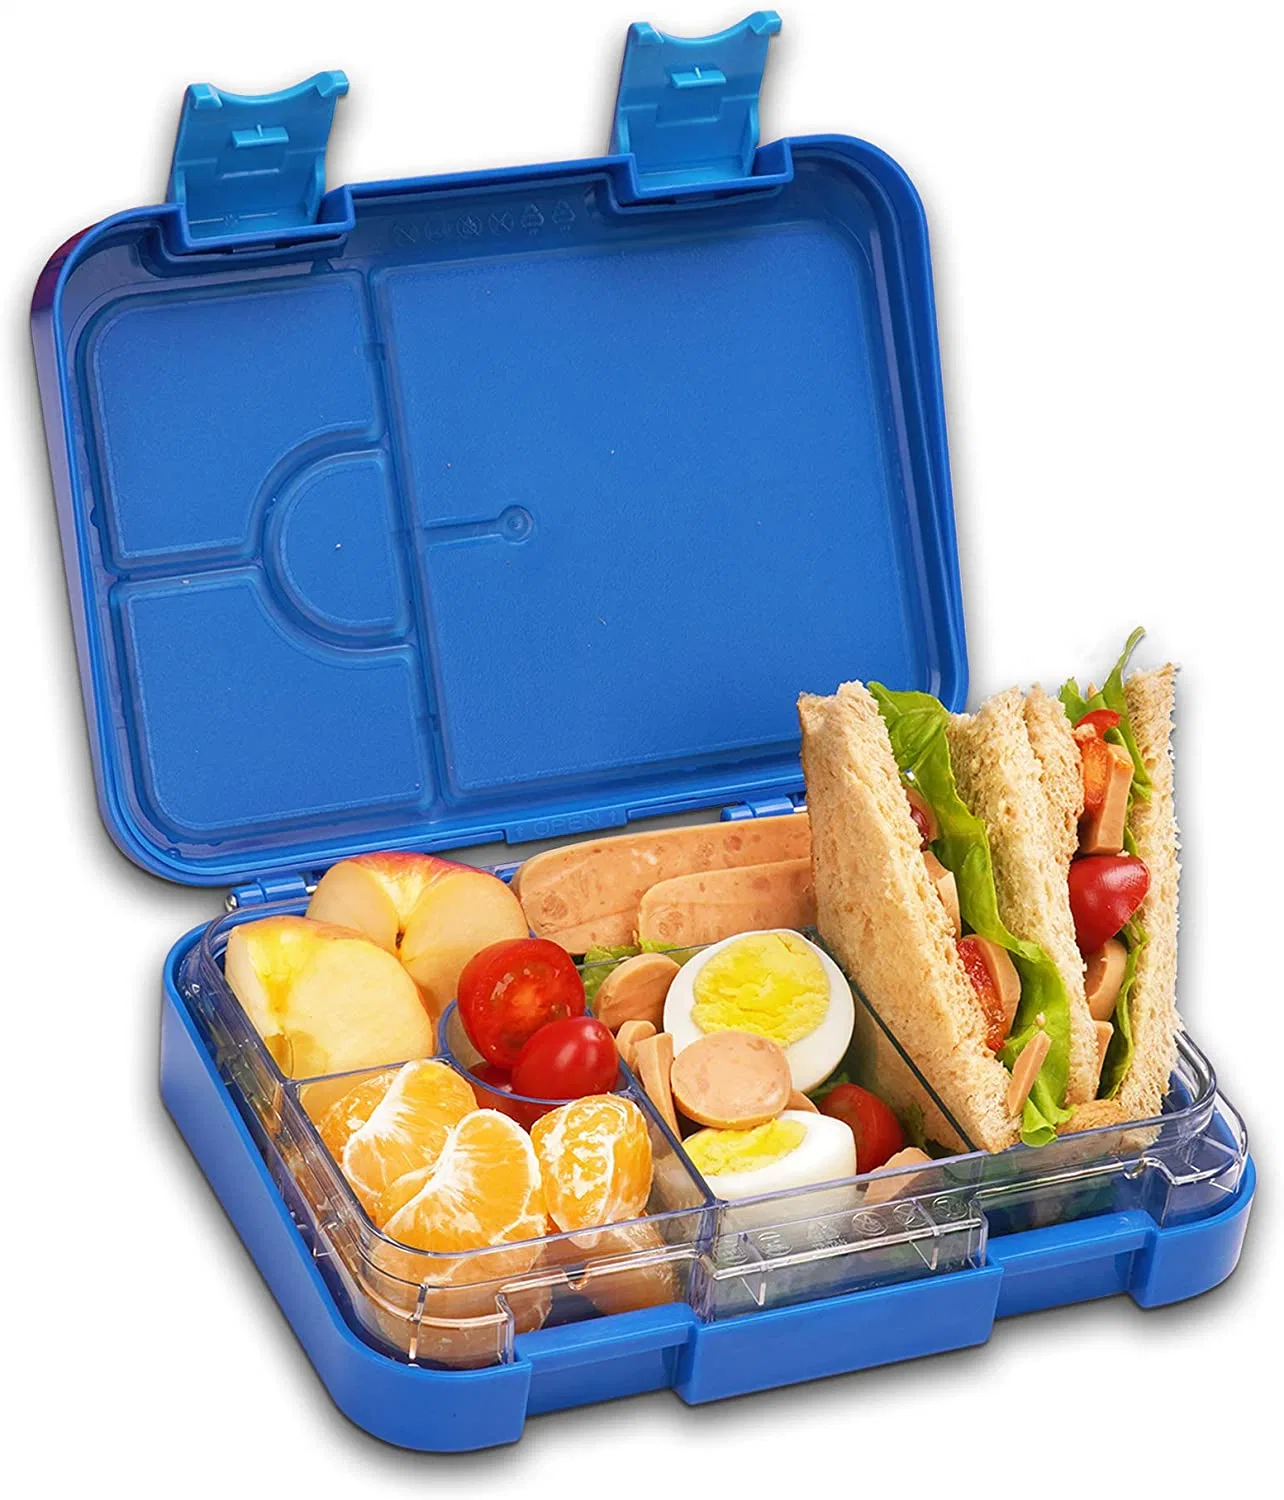 Venta caliente de Aohea llevar envases de plástico para alimentos almuerzo infantil Caja